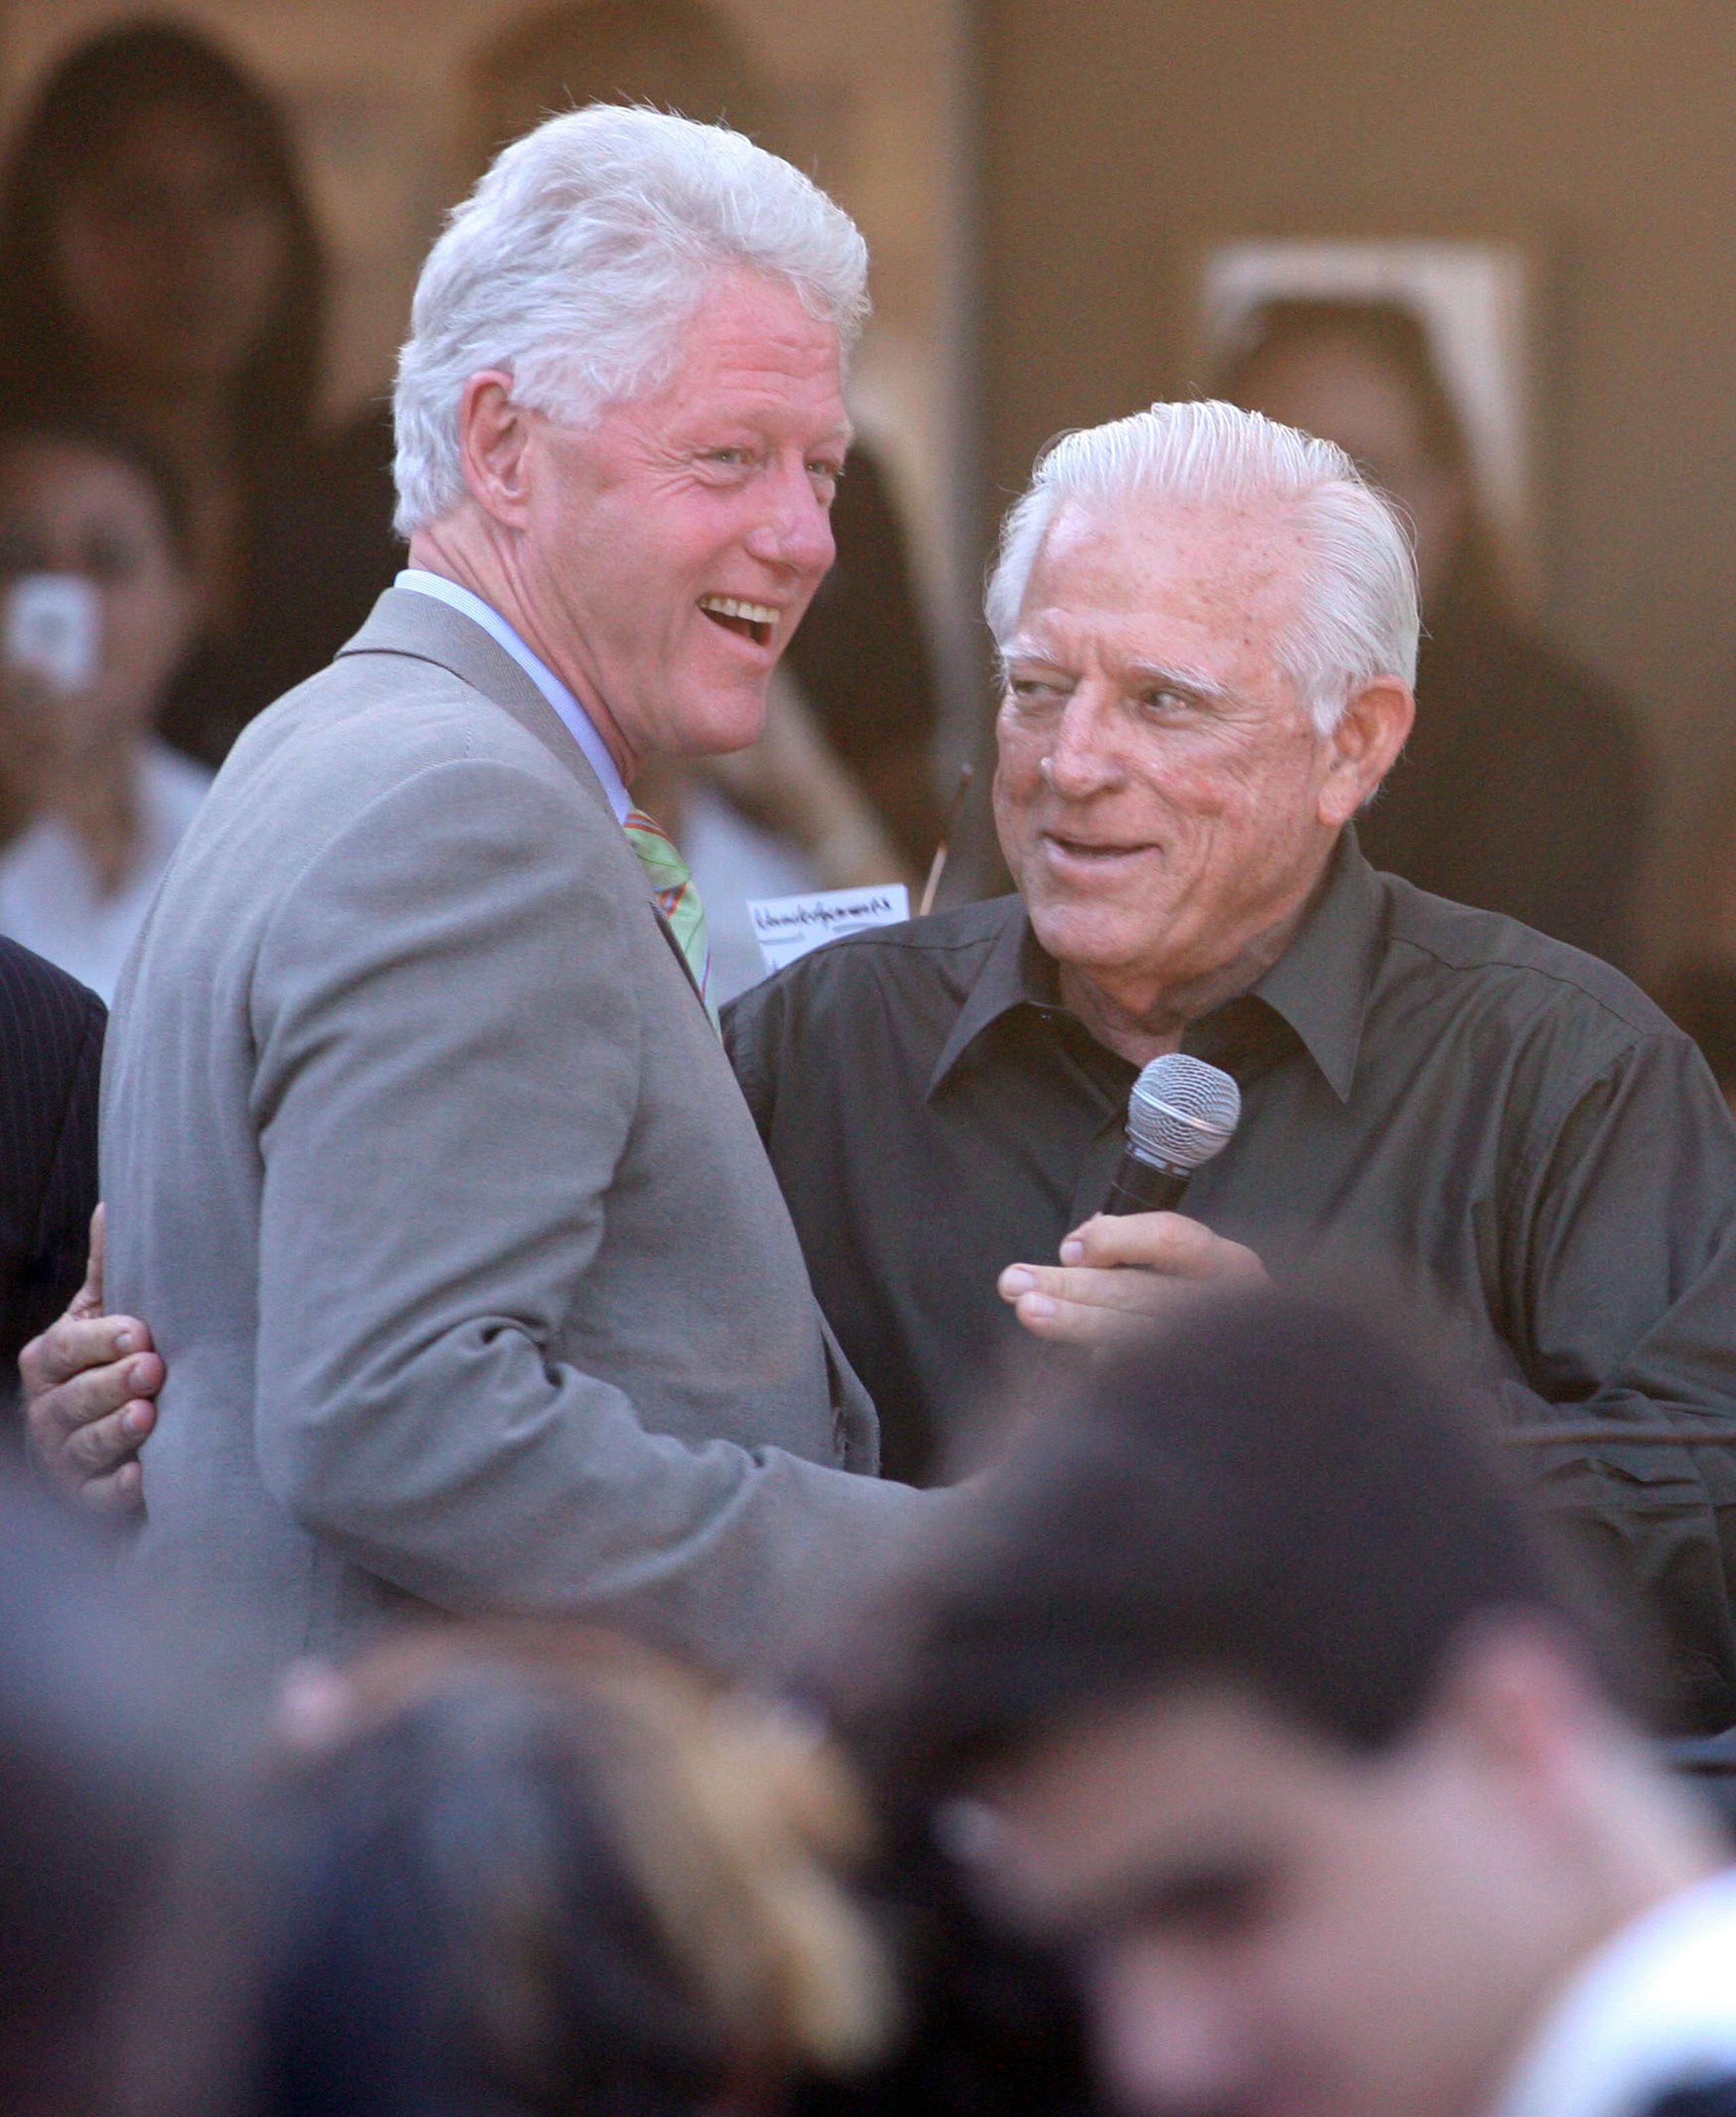 En esta foto de 2008, el expresidente Bill Clinton saluda a Carlos Romero Barceló durante una actividad en un restaurante de Salinas.